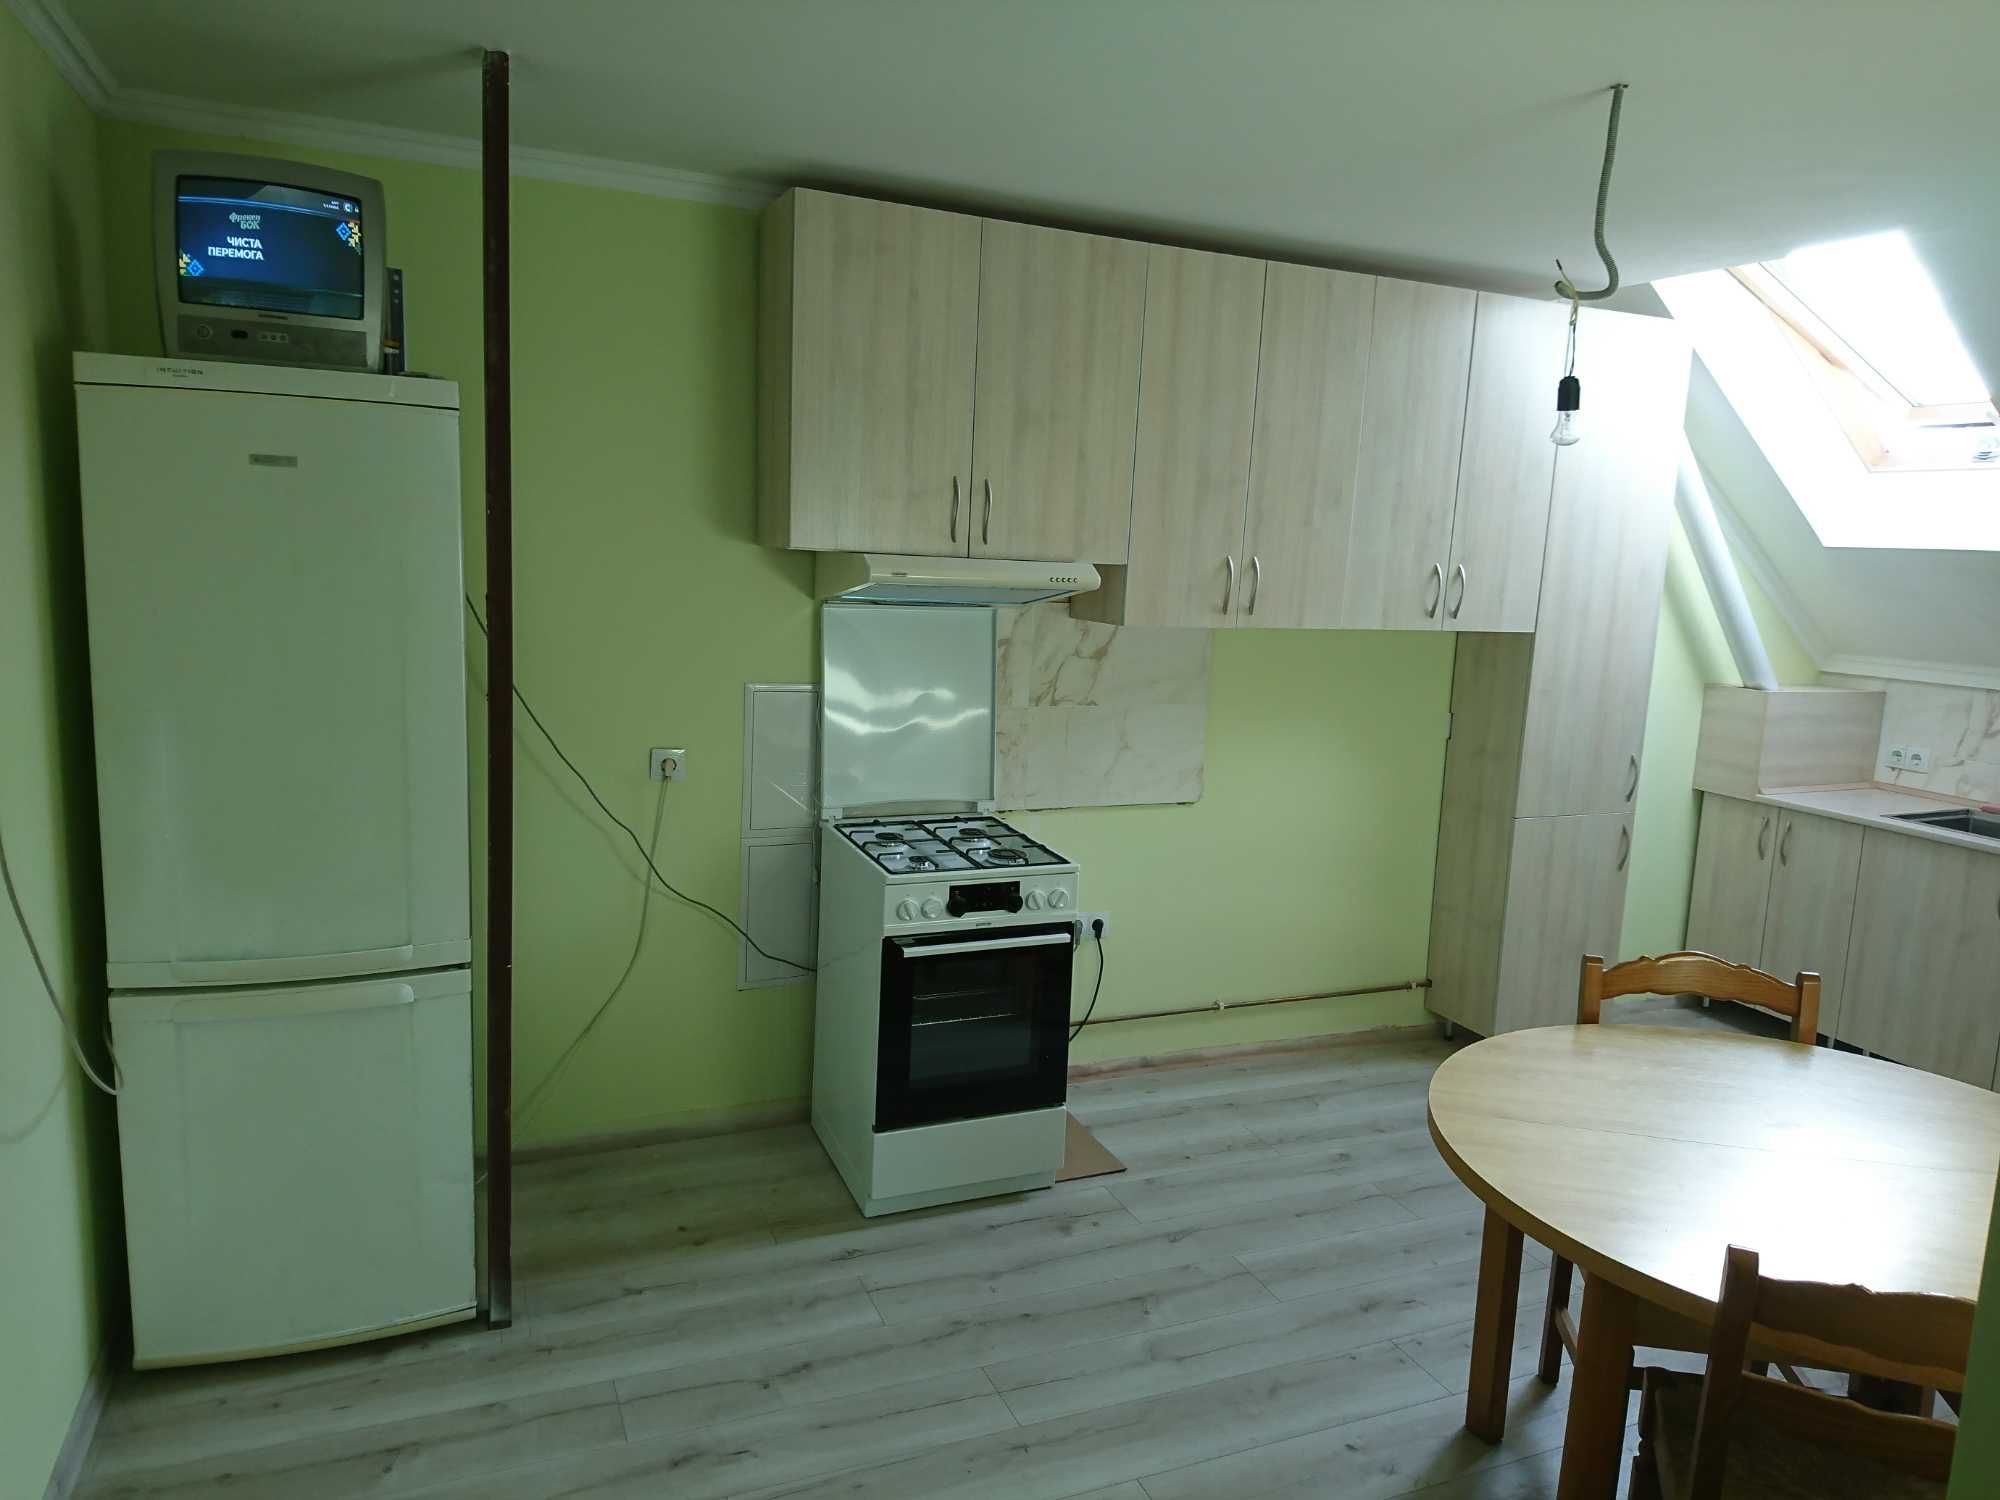 Здається 2 кімнати 20 м² і 15 м², кухня 17 м² смт. Петрики, Тернопіль.